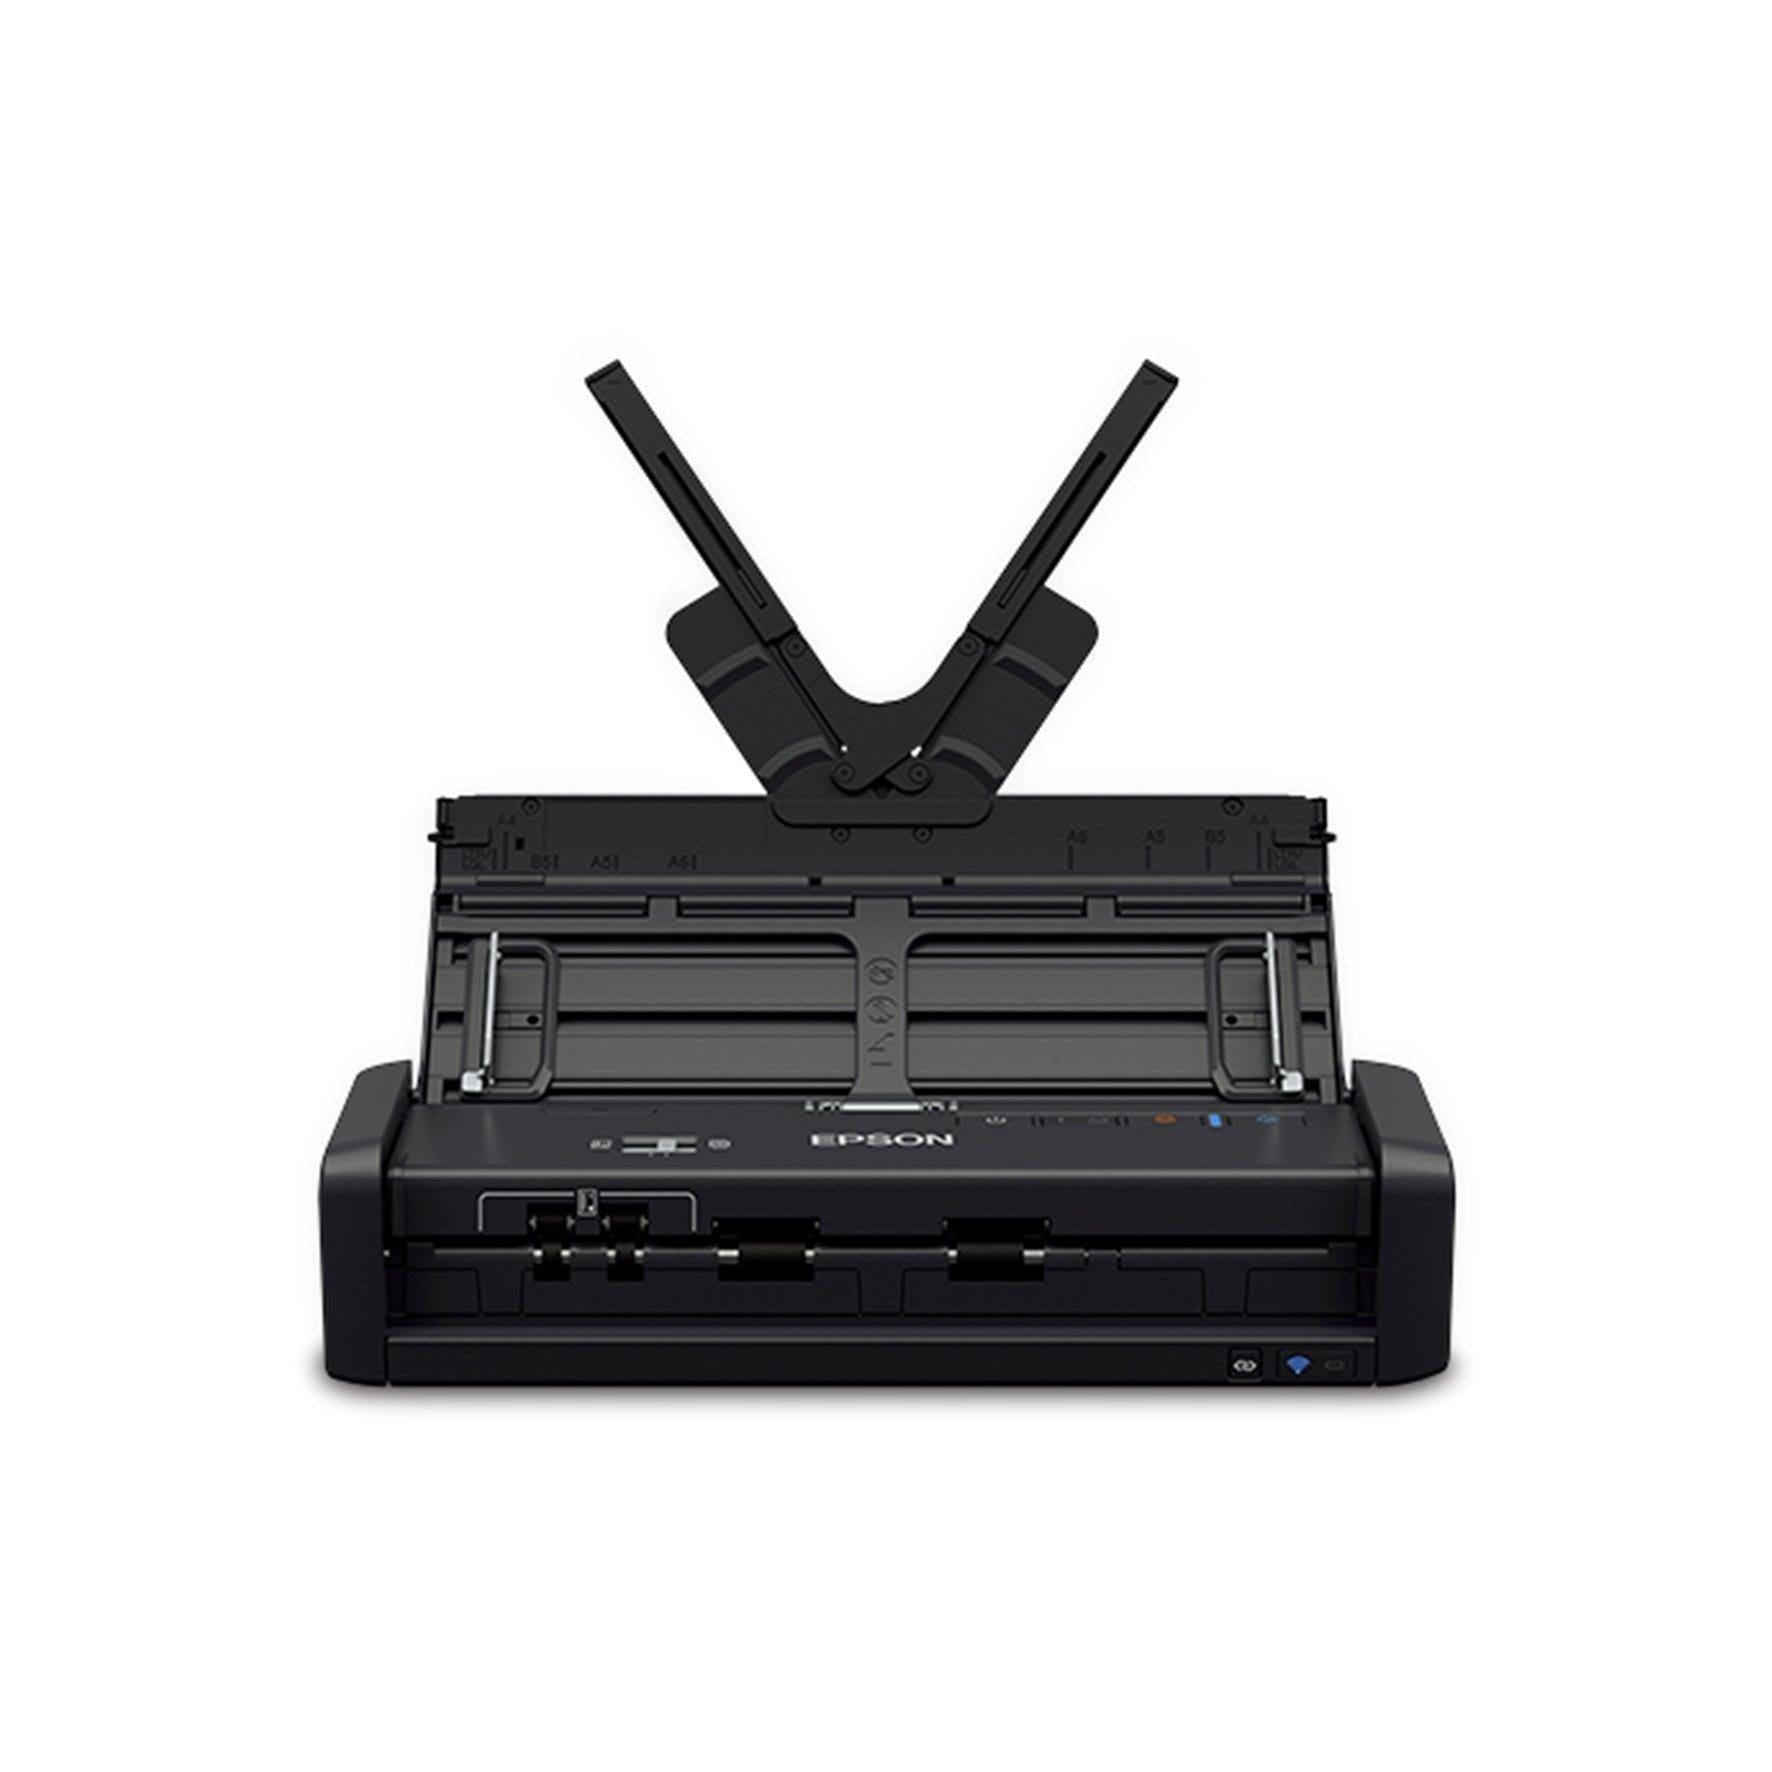 Scanner Epson WorkForce ES300w WiFi ADF Duplex - B11B242201 - Mega Market